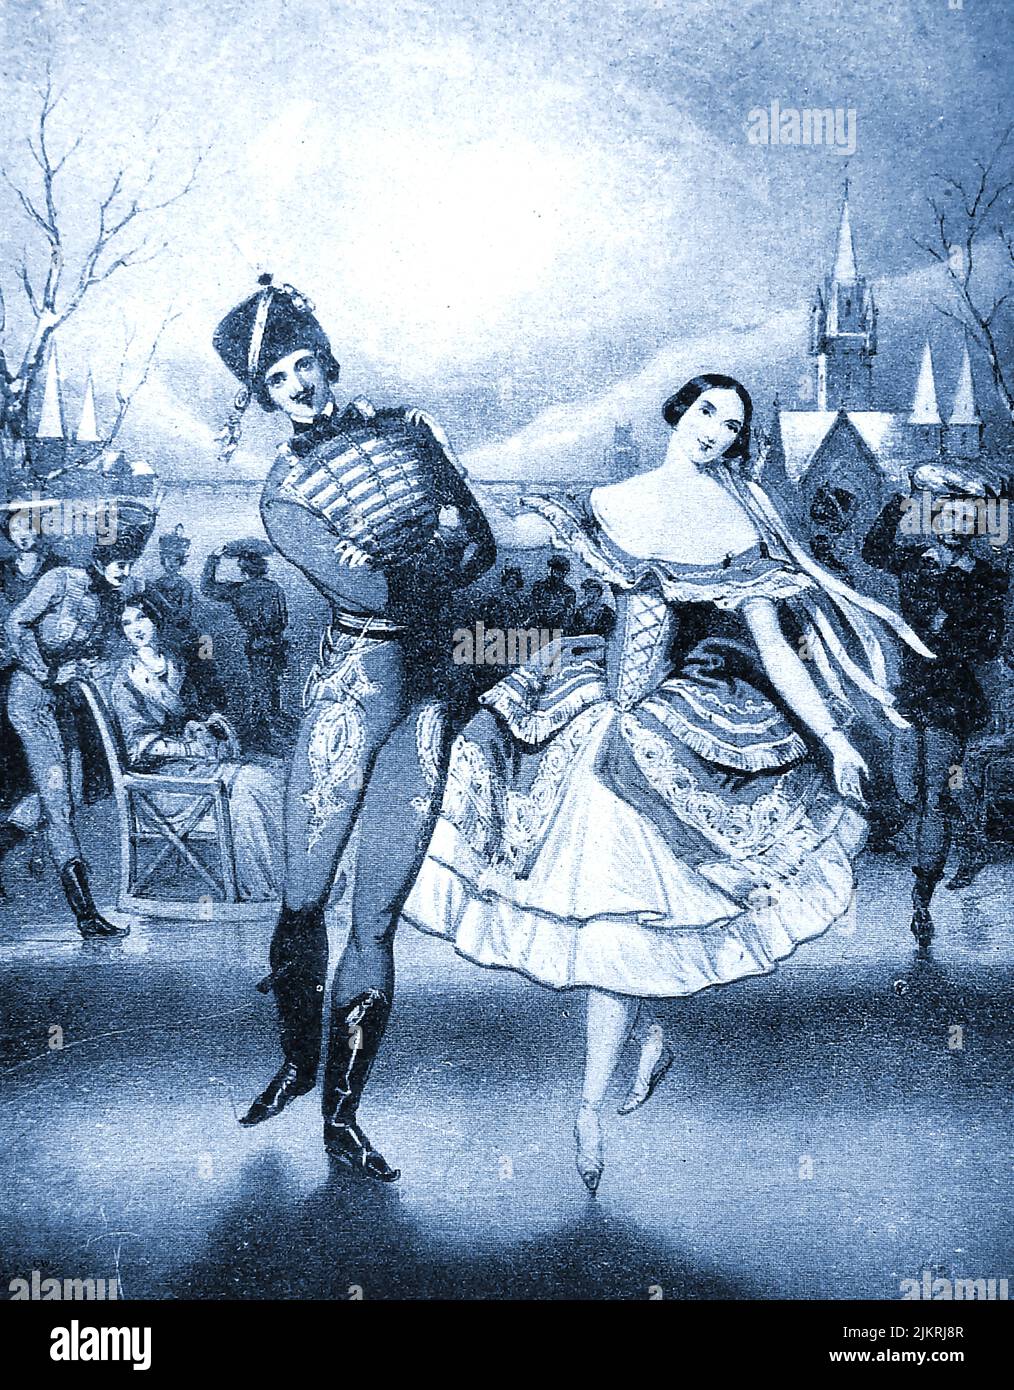 A 1940's english illustration described as ' Carlotta Roati & M. Charles in' Les Plaisers de l'hiver''.Une illustration anglaise des années 1940 décrite comme « Carlotta Roati & M. Charles in ' Les Plaisers de l’hiver' ». Stock Photo